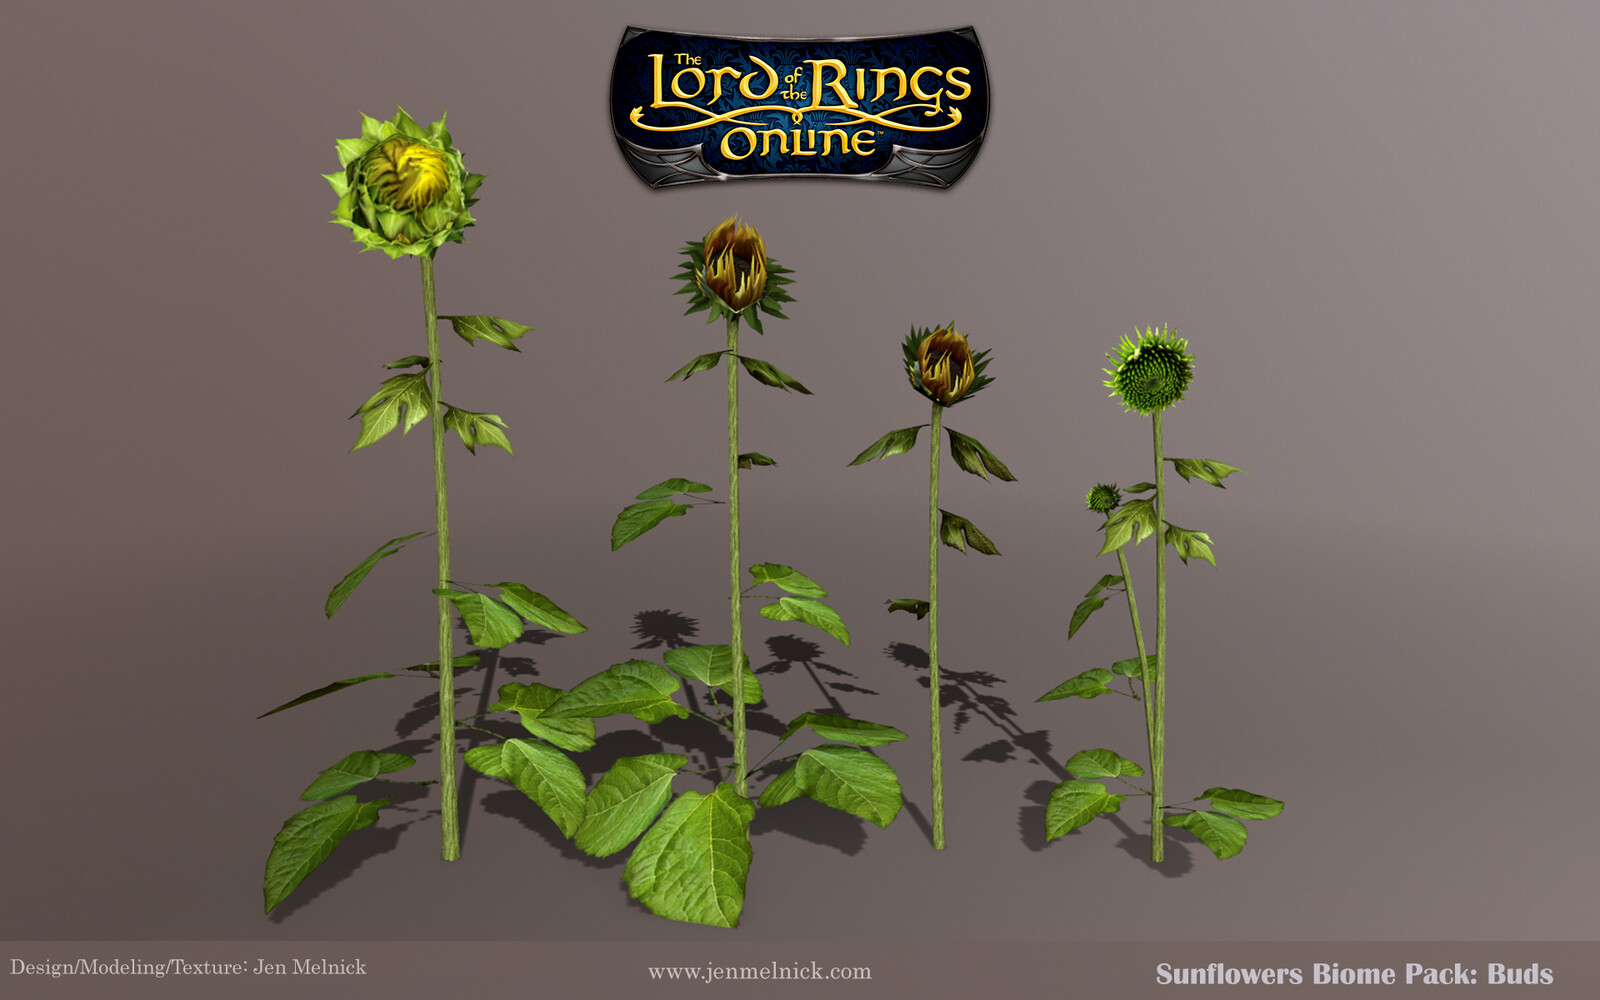 Sunflowers: Four individual bud stalks